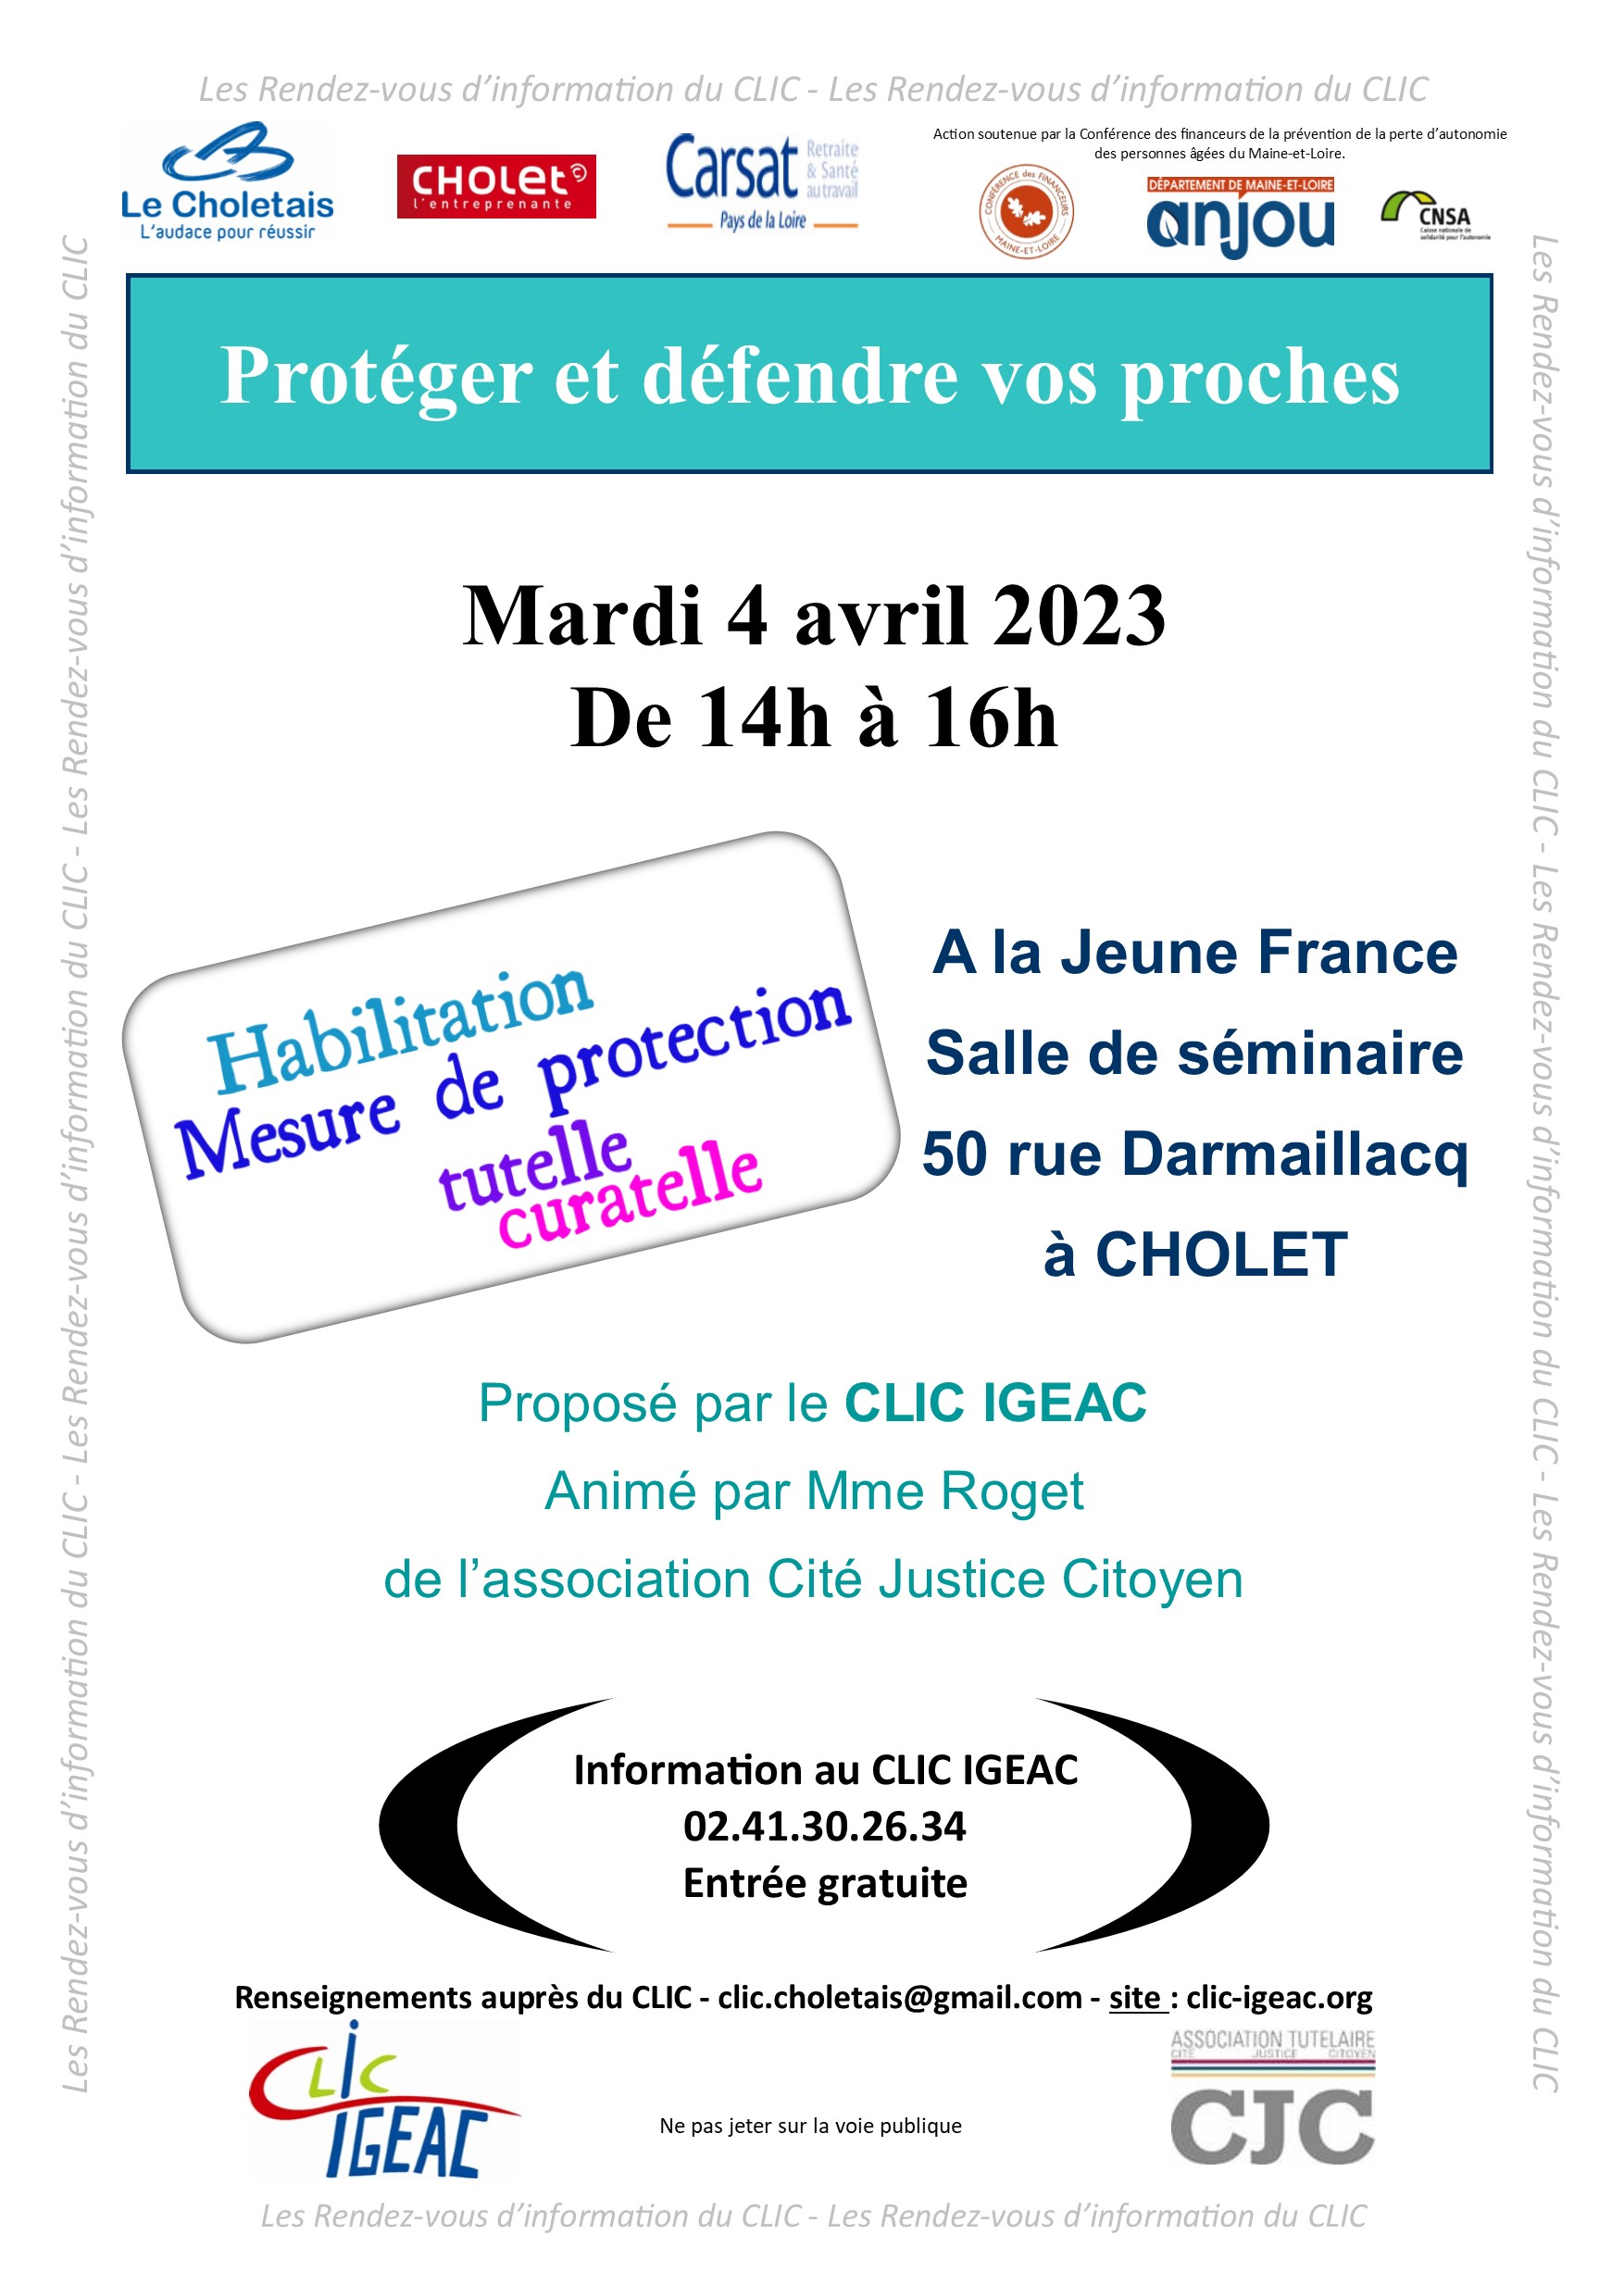 Mesure de protection Habilitation Tutelle Curatelle Information le 4/04/2023 de 14h à 16h A la Jeune France 50 rue Darmaillacq à Cholet